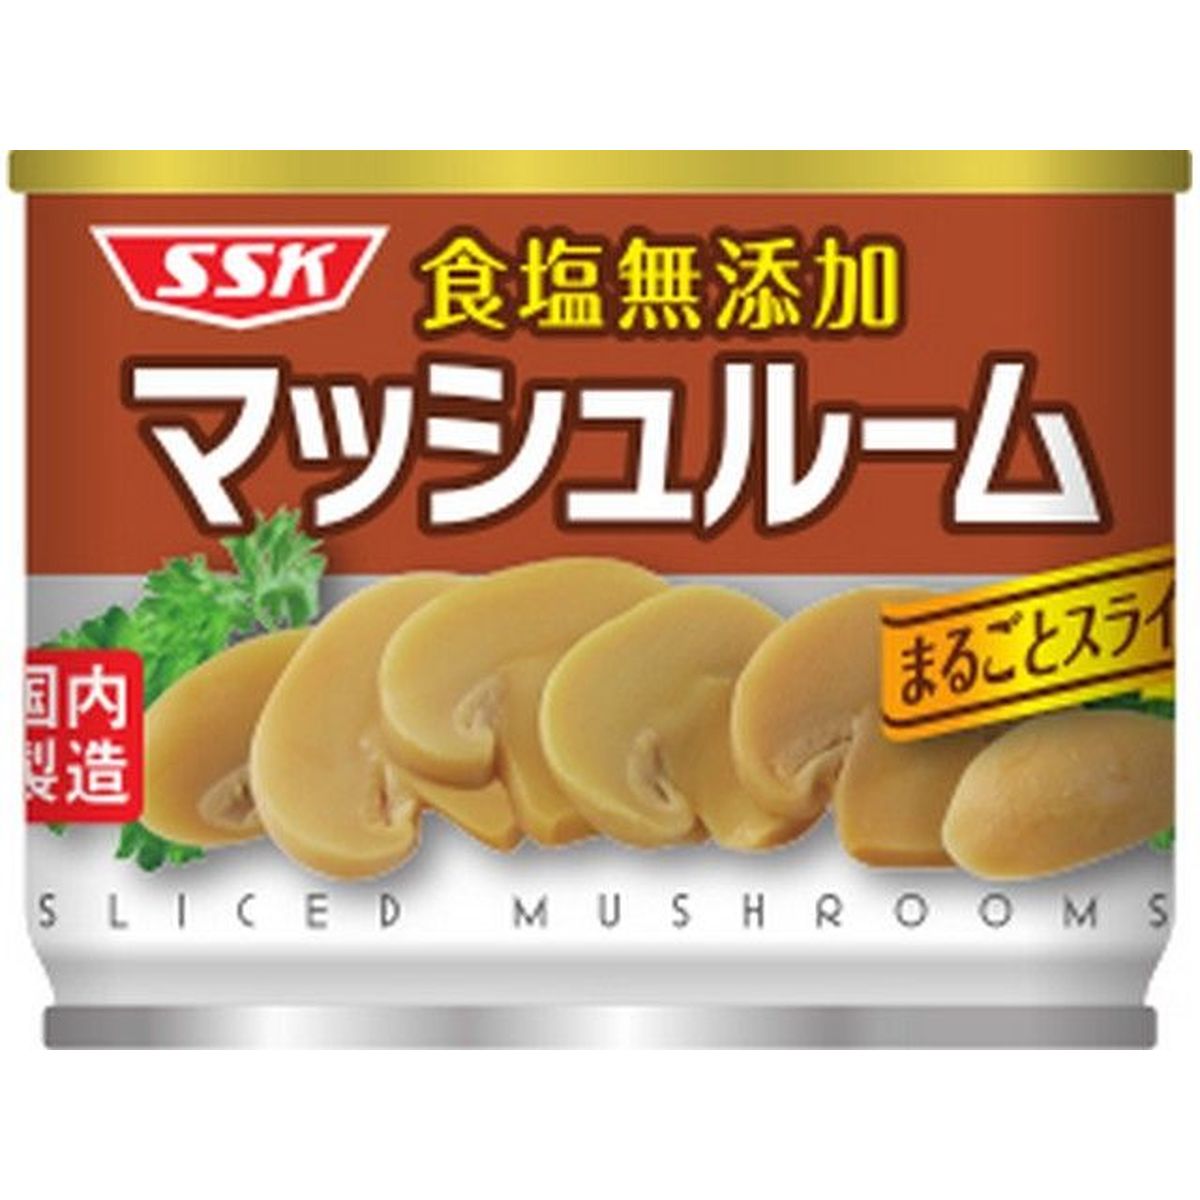 【6個入リ】SSK 食塩無添加マッシュルームスライス 125g